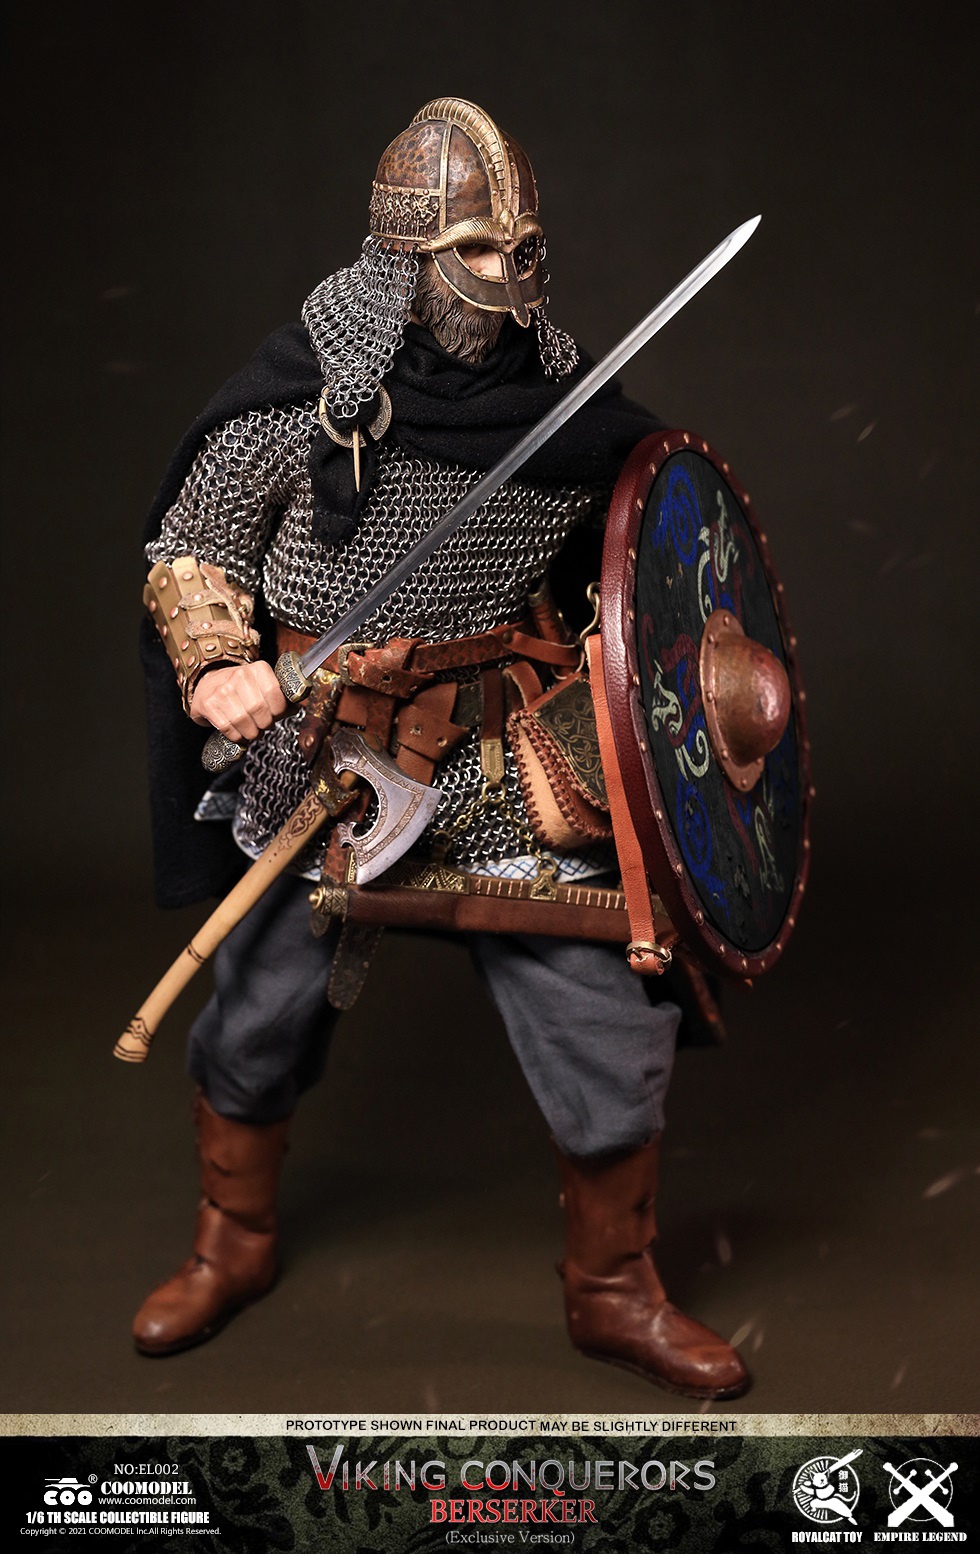 NEW PRODUCT: COOMODEL - Legend of the Empire-Viking Conqueror-Warrior, Berserker, Lord#EL001/EL002/EL003 0554